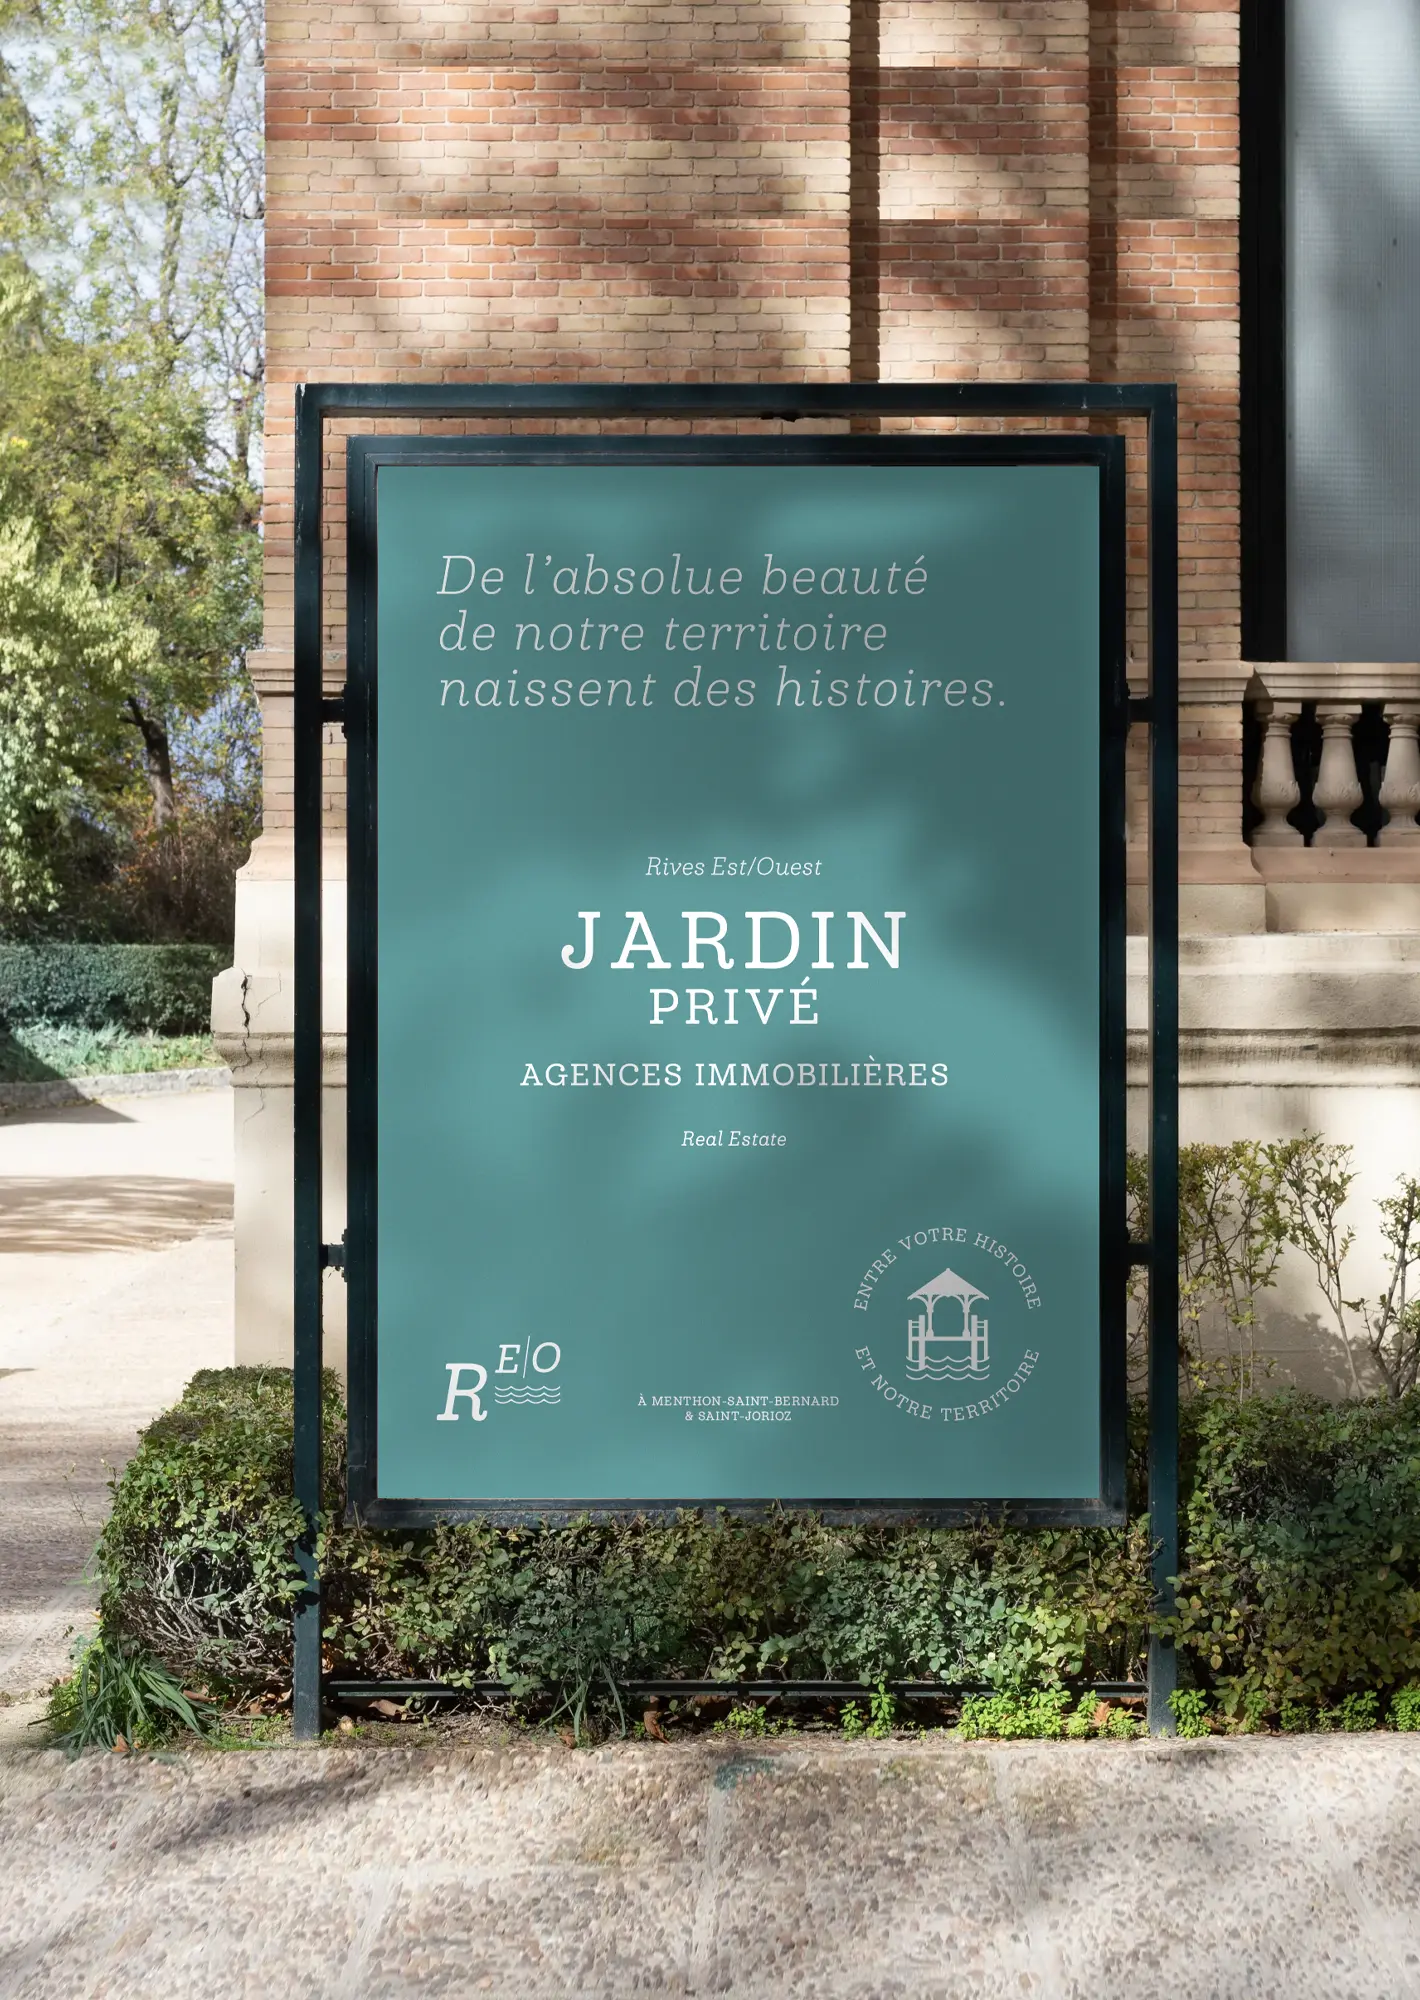 Création d'affiche pour l'agence immobilière Jardin Privé à Annecy par Blue1310, graphiste freelance en Haute-Savoie, mettant en avant une identité visuelle élégante et professionnelle.